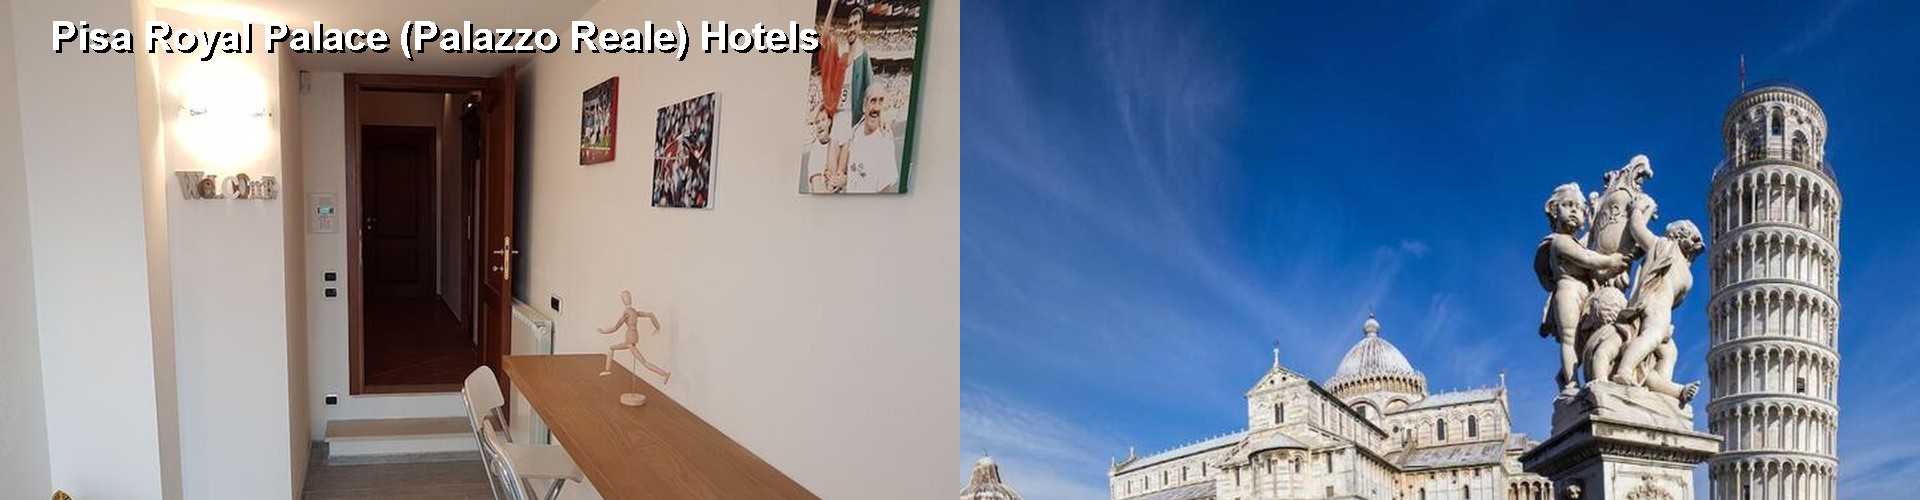 5 Best Hotels near Pisa Royal Palace (Palazzo Reale)